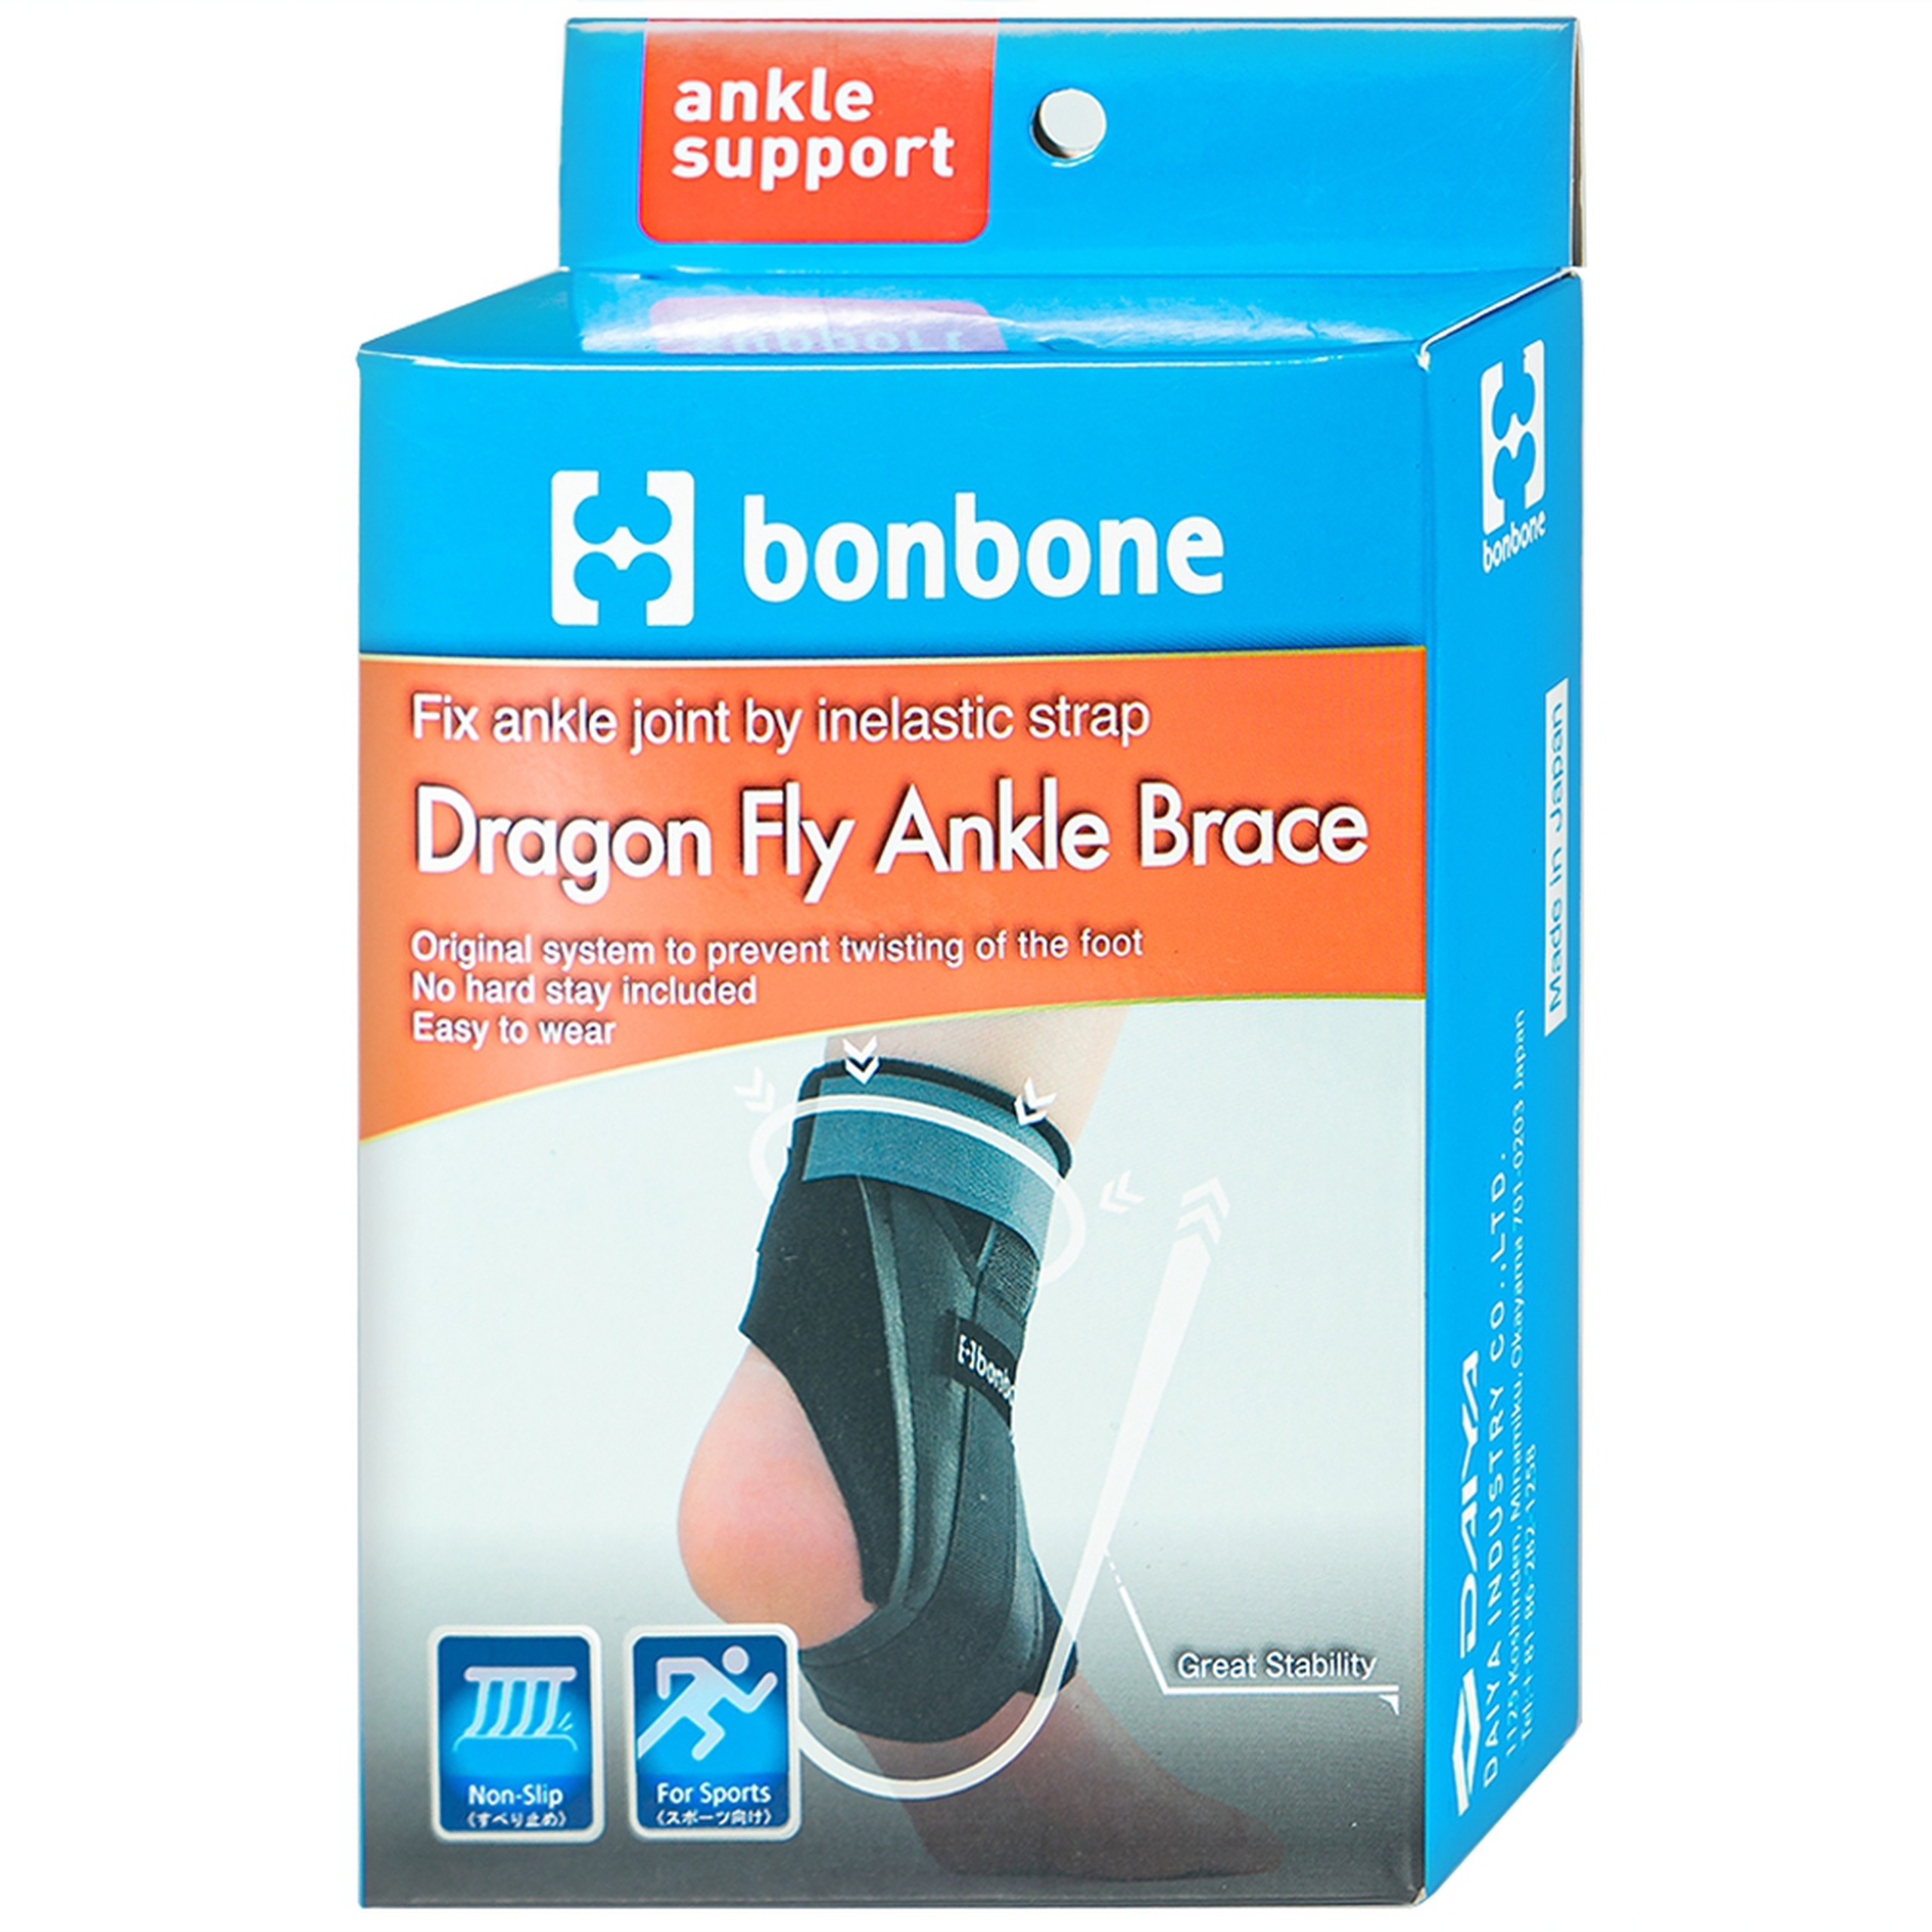 Đai nẹp mắt cá chân Bonbone Dragon Fly Ankle Brace size S giảm rung và chấn động khi hoạt động liên tục